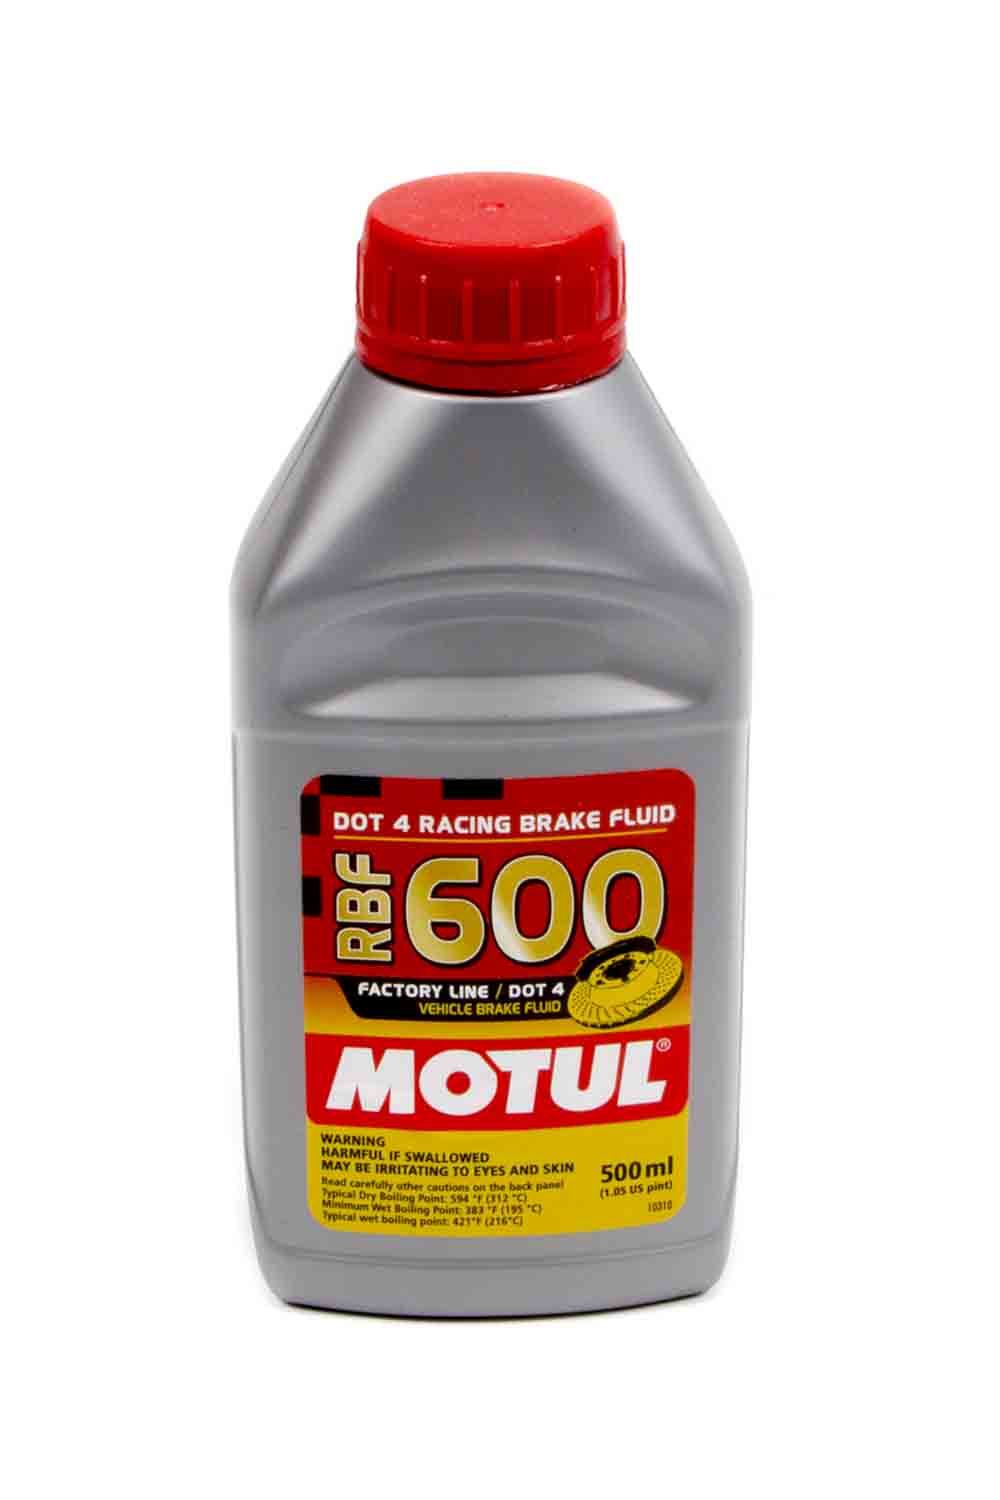 ALLSTAR, Brake Fluid, Motul 600, DOT 4, 500 ml, Each